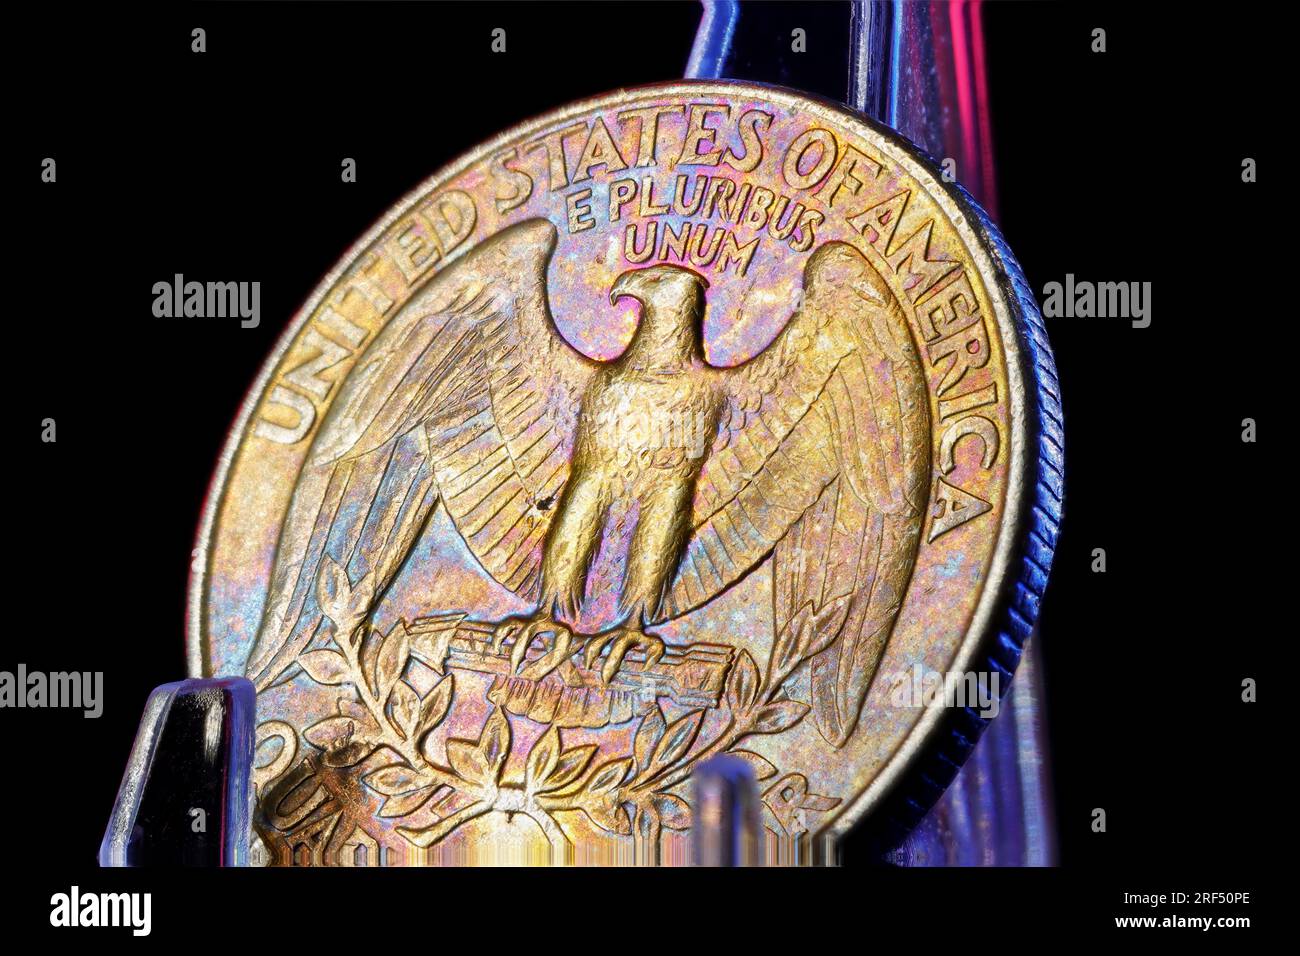 1996 Quarter Dollar con splendide tonalità dell'arcobaleno. Il dritto presenta un ritratto di George Washington e il rovescio mostra un'aquila che stringe le frecce Foto Stock